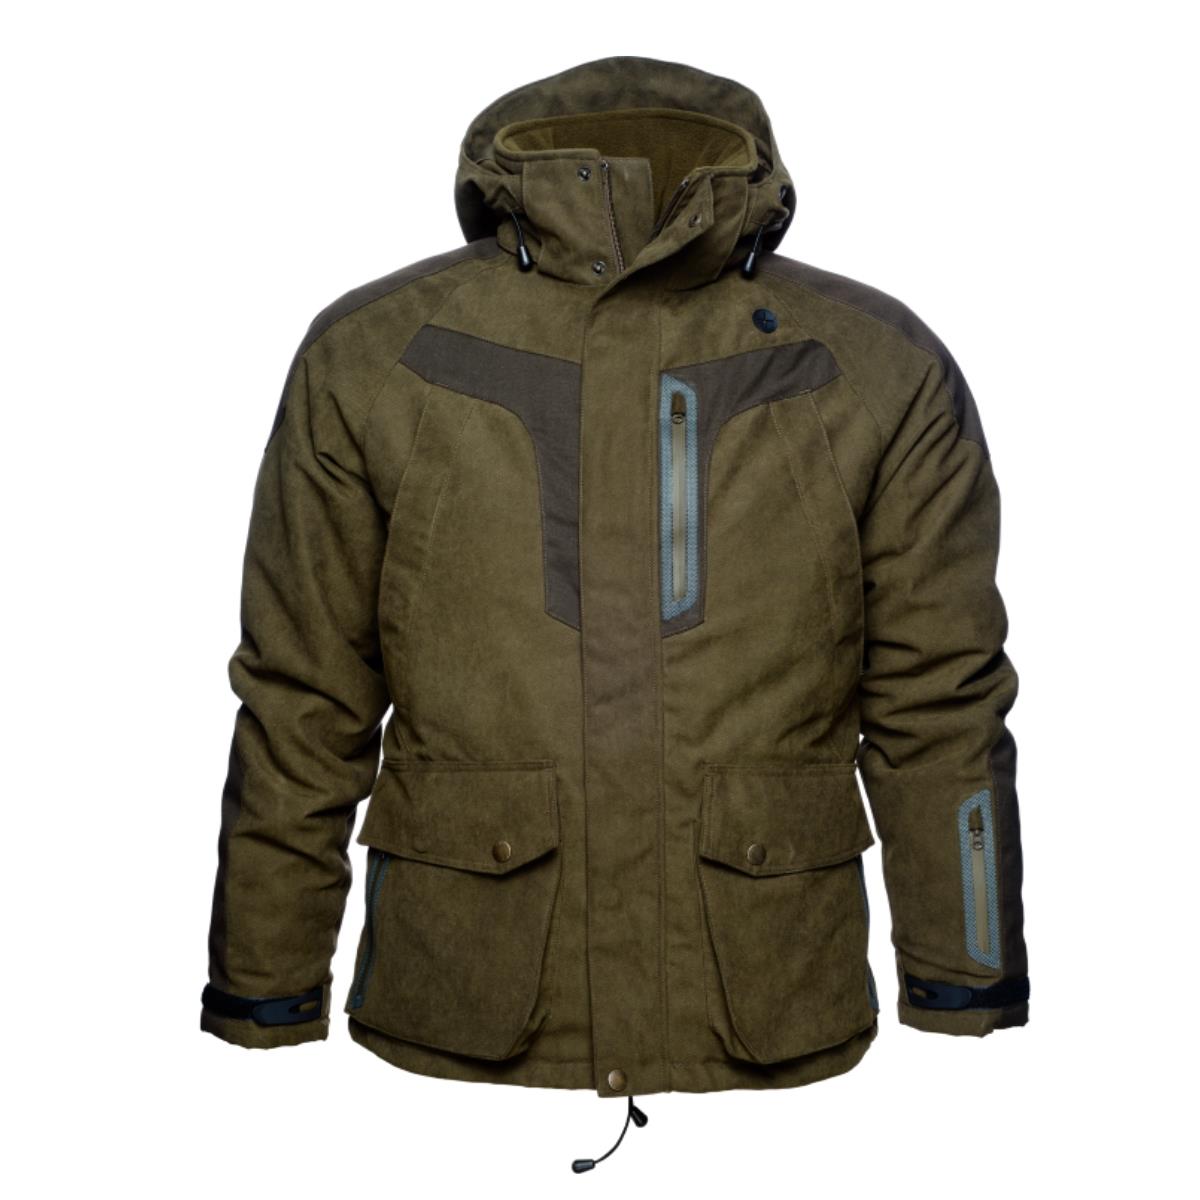 Куртка Helt SEELAND куртка ветровка для животных светоотражающая xs дс 18 20 ош 22 24 ог 29 30 см оранжевая 73319